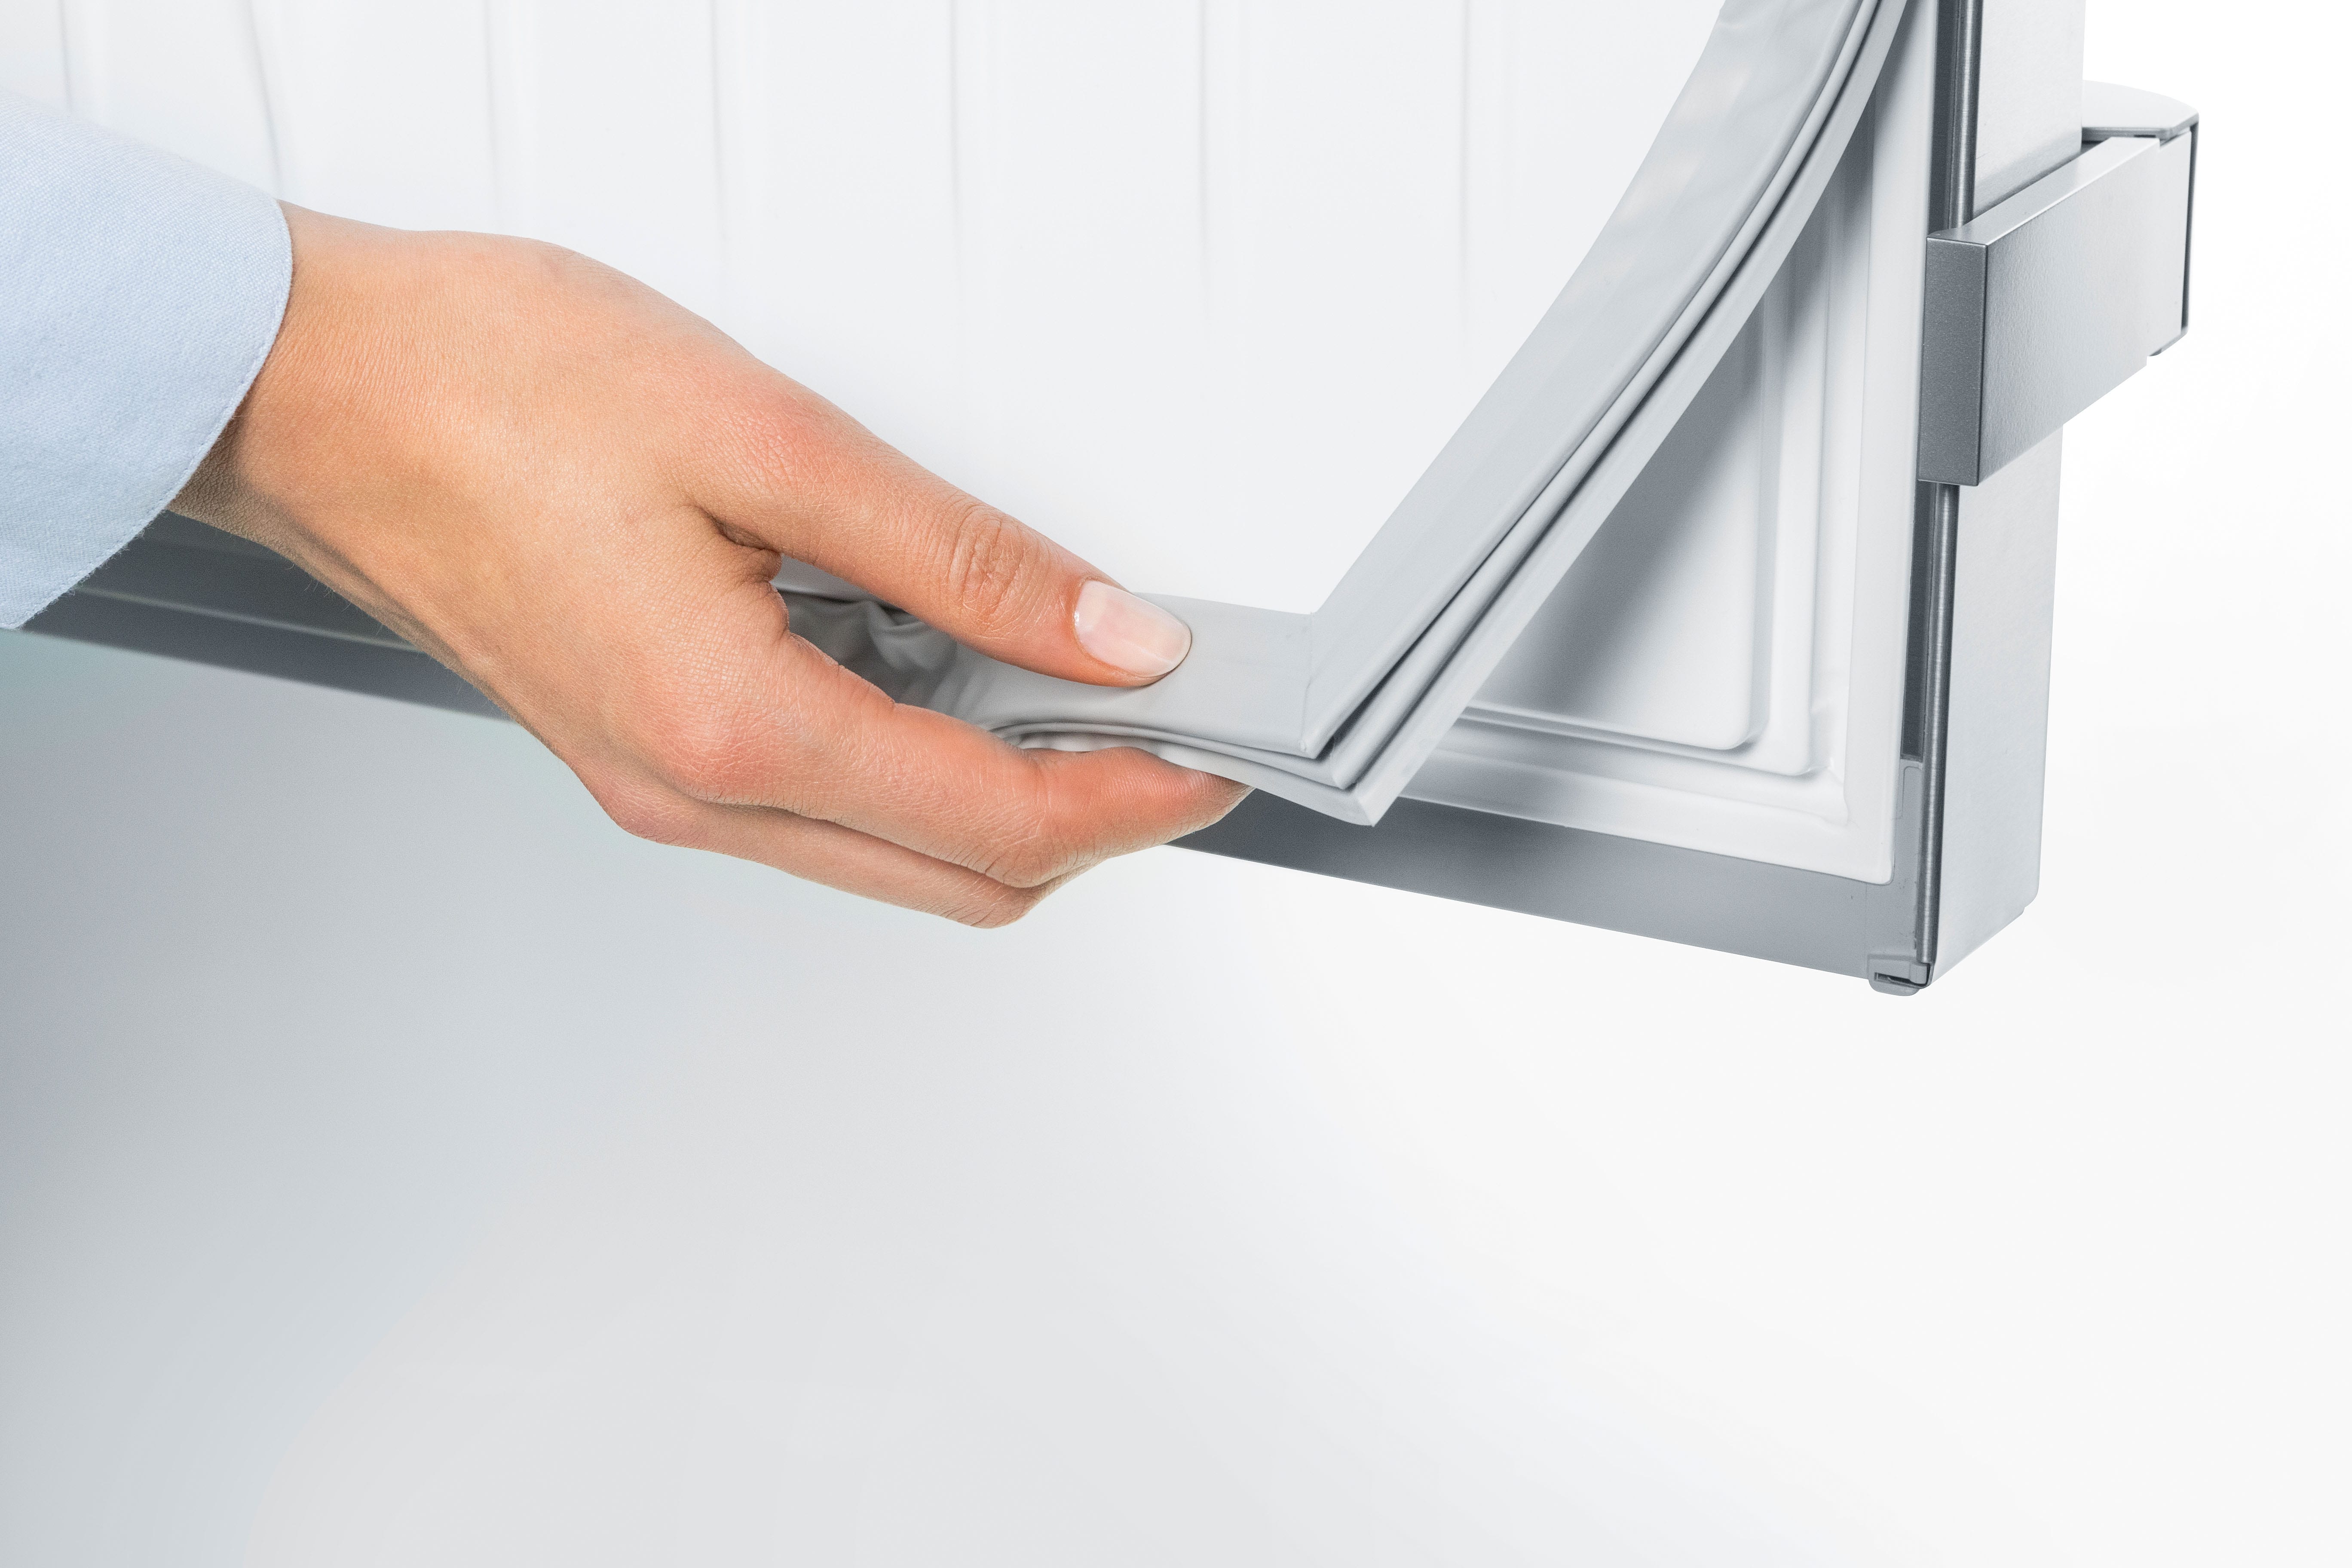 Voici comment remplacer le joint de la porte de votre frigo